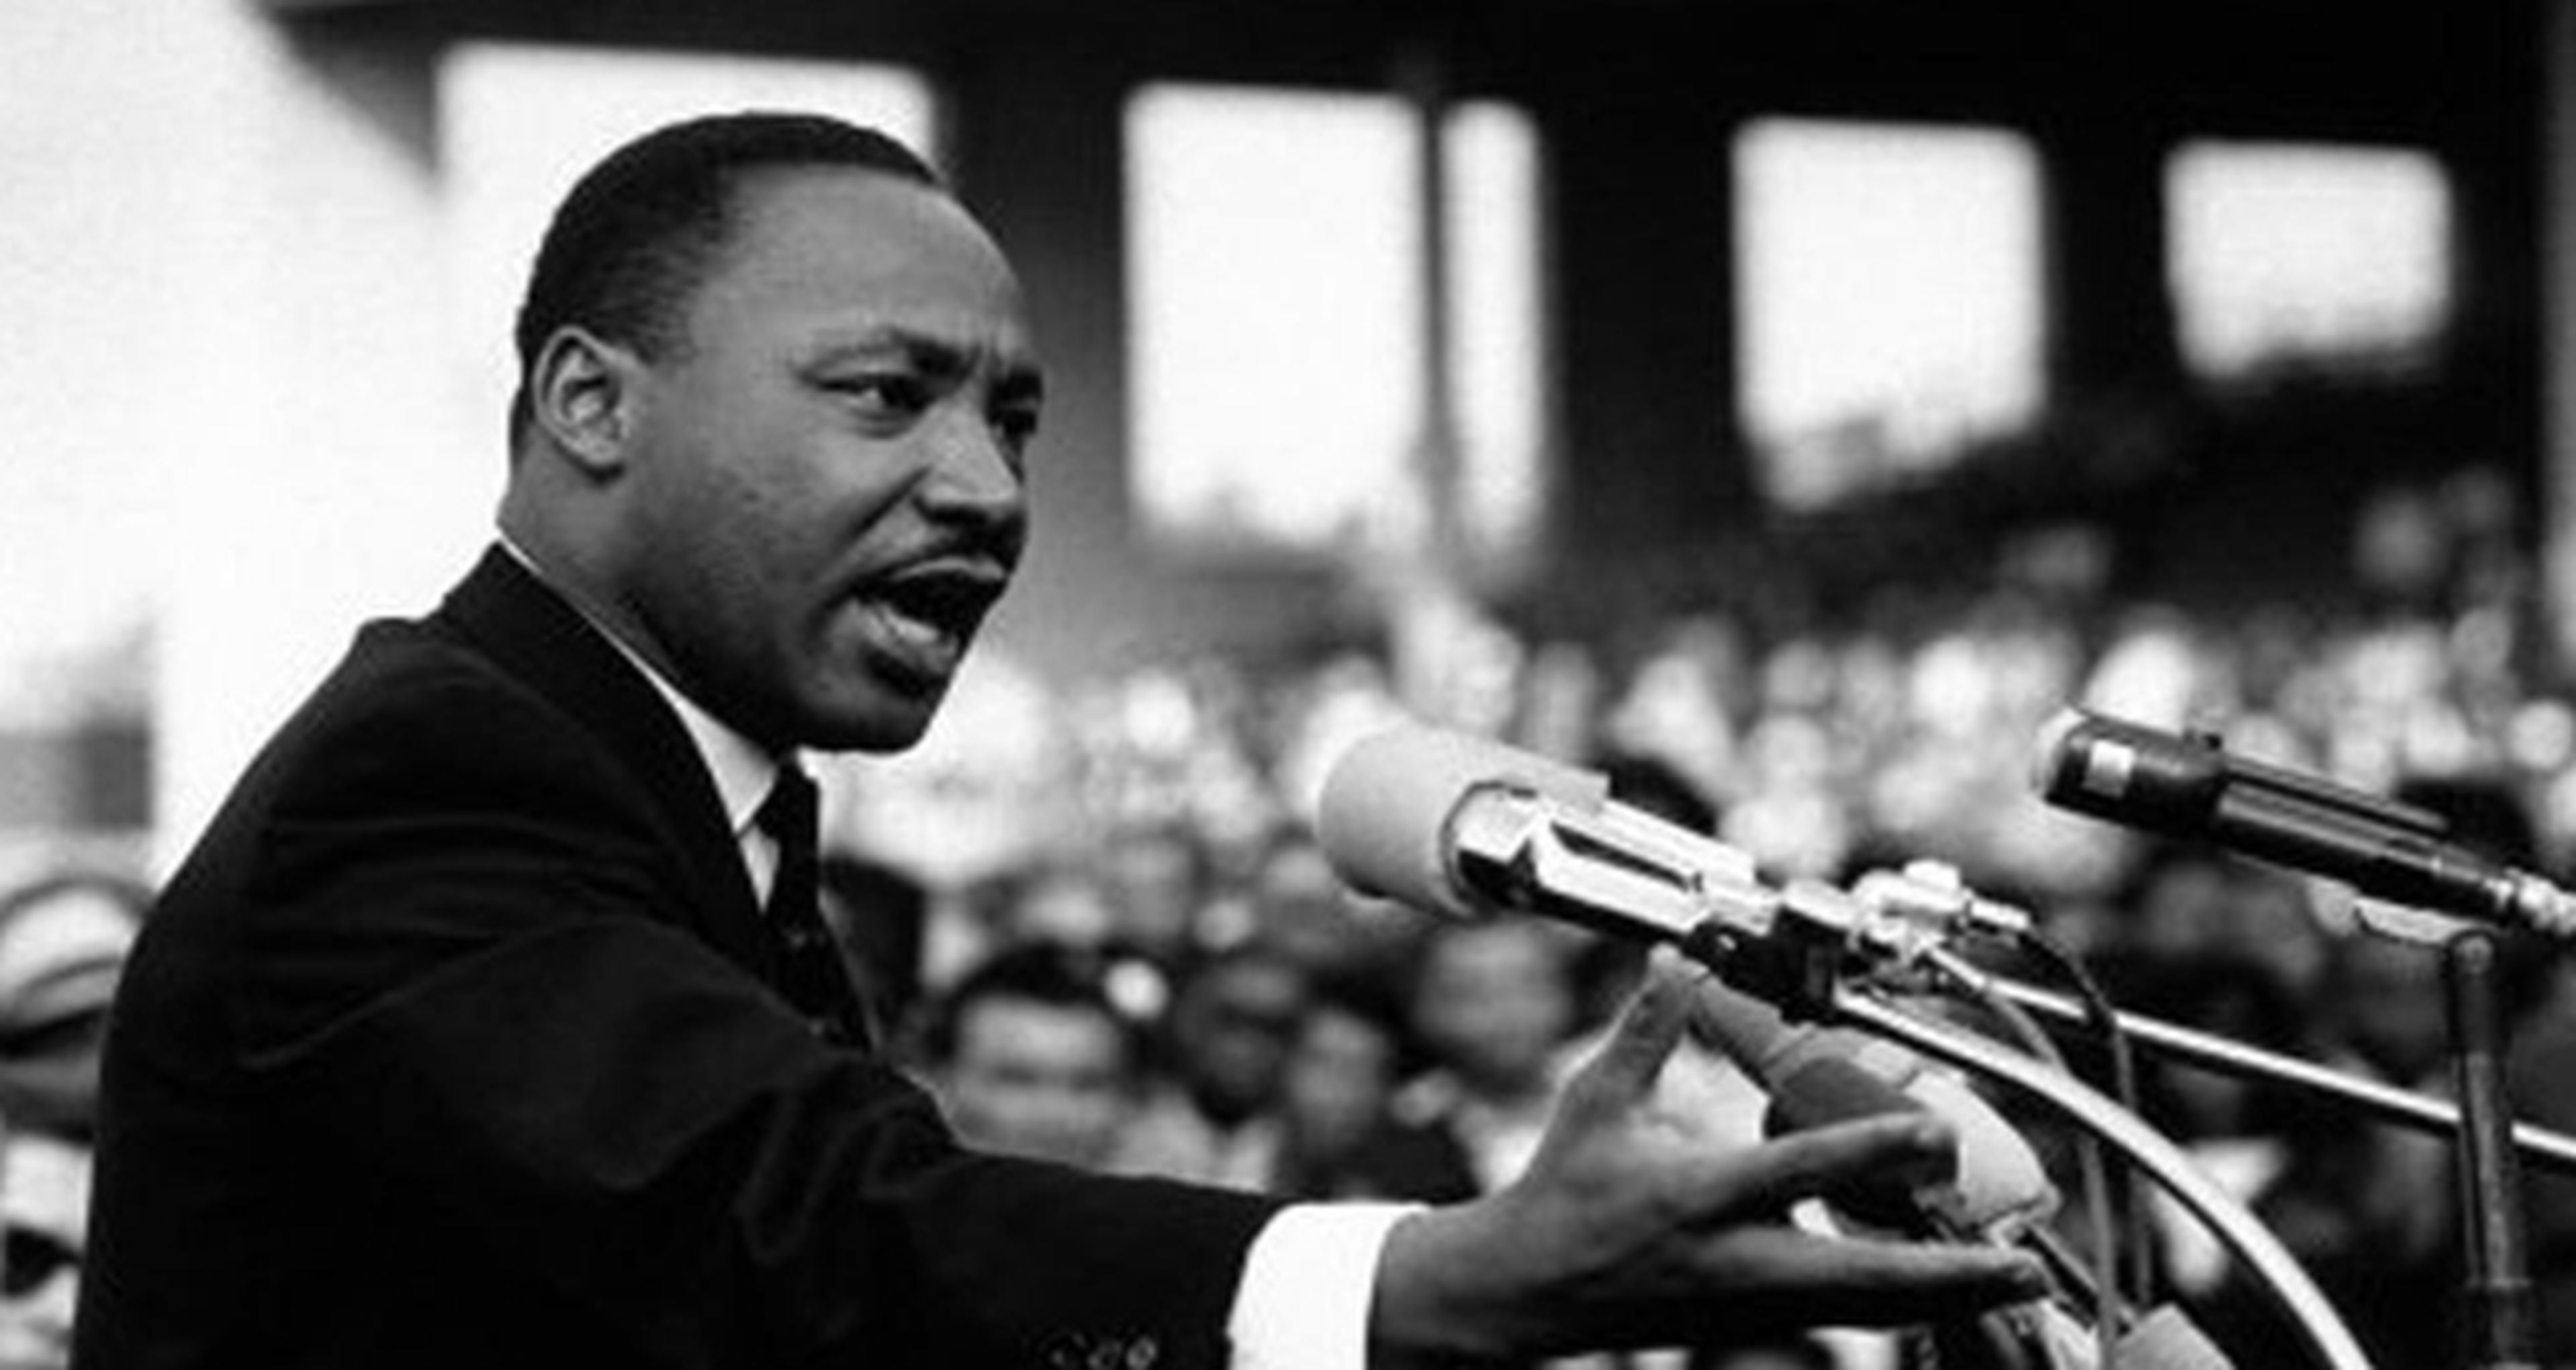 El creador de The Wire prepara una miniserie sobre Luther King